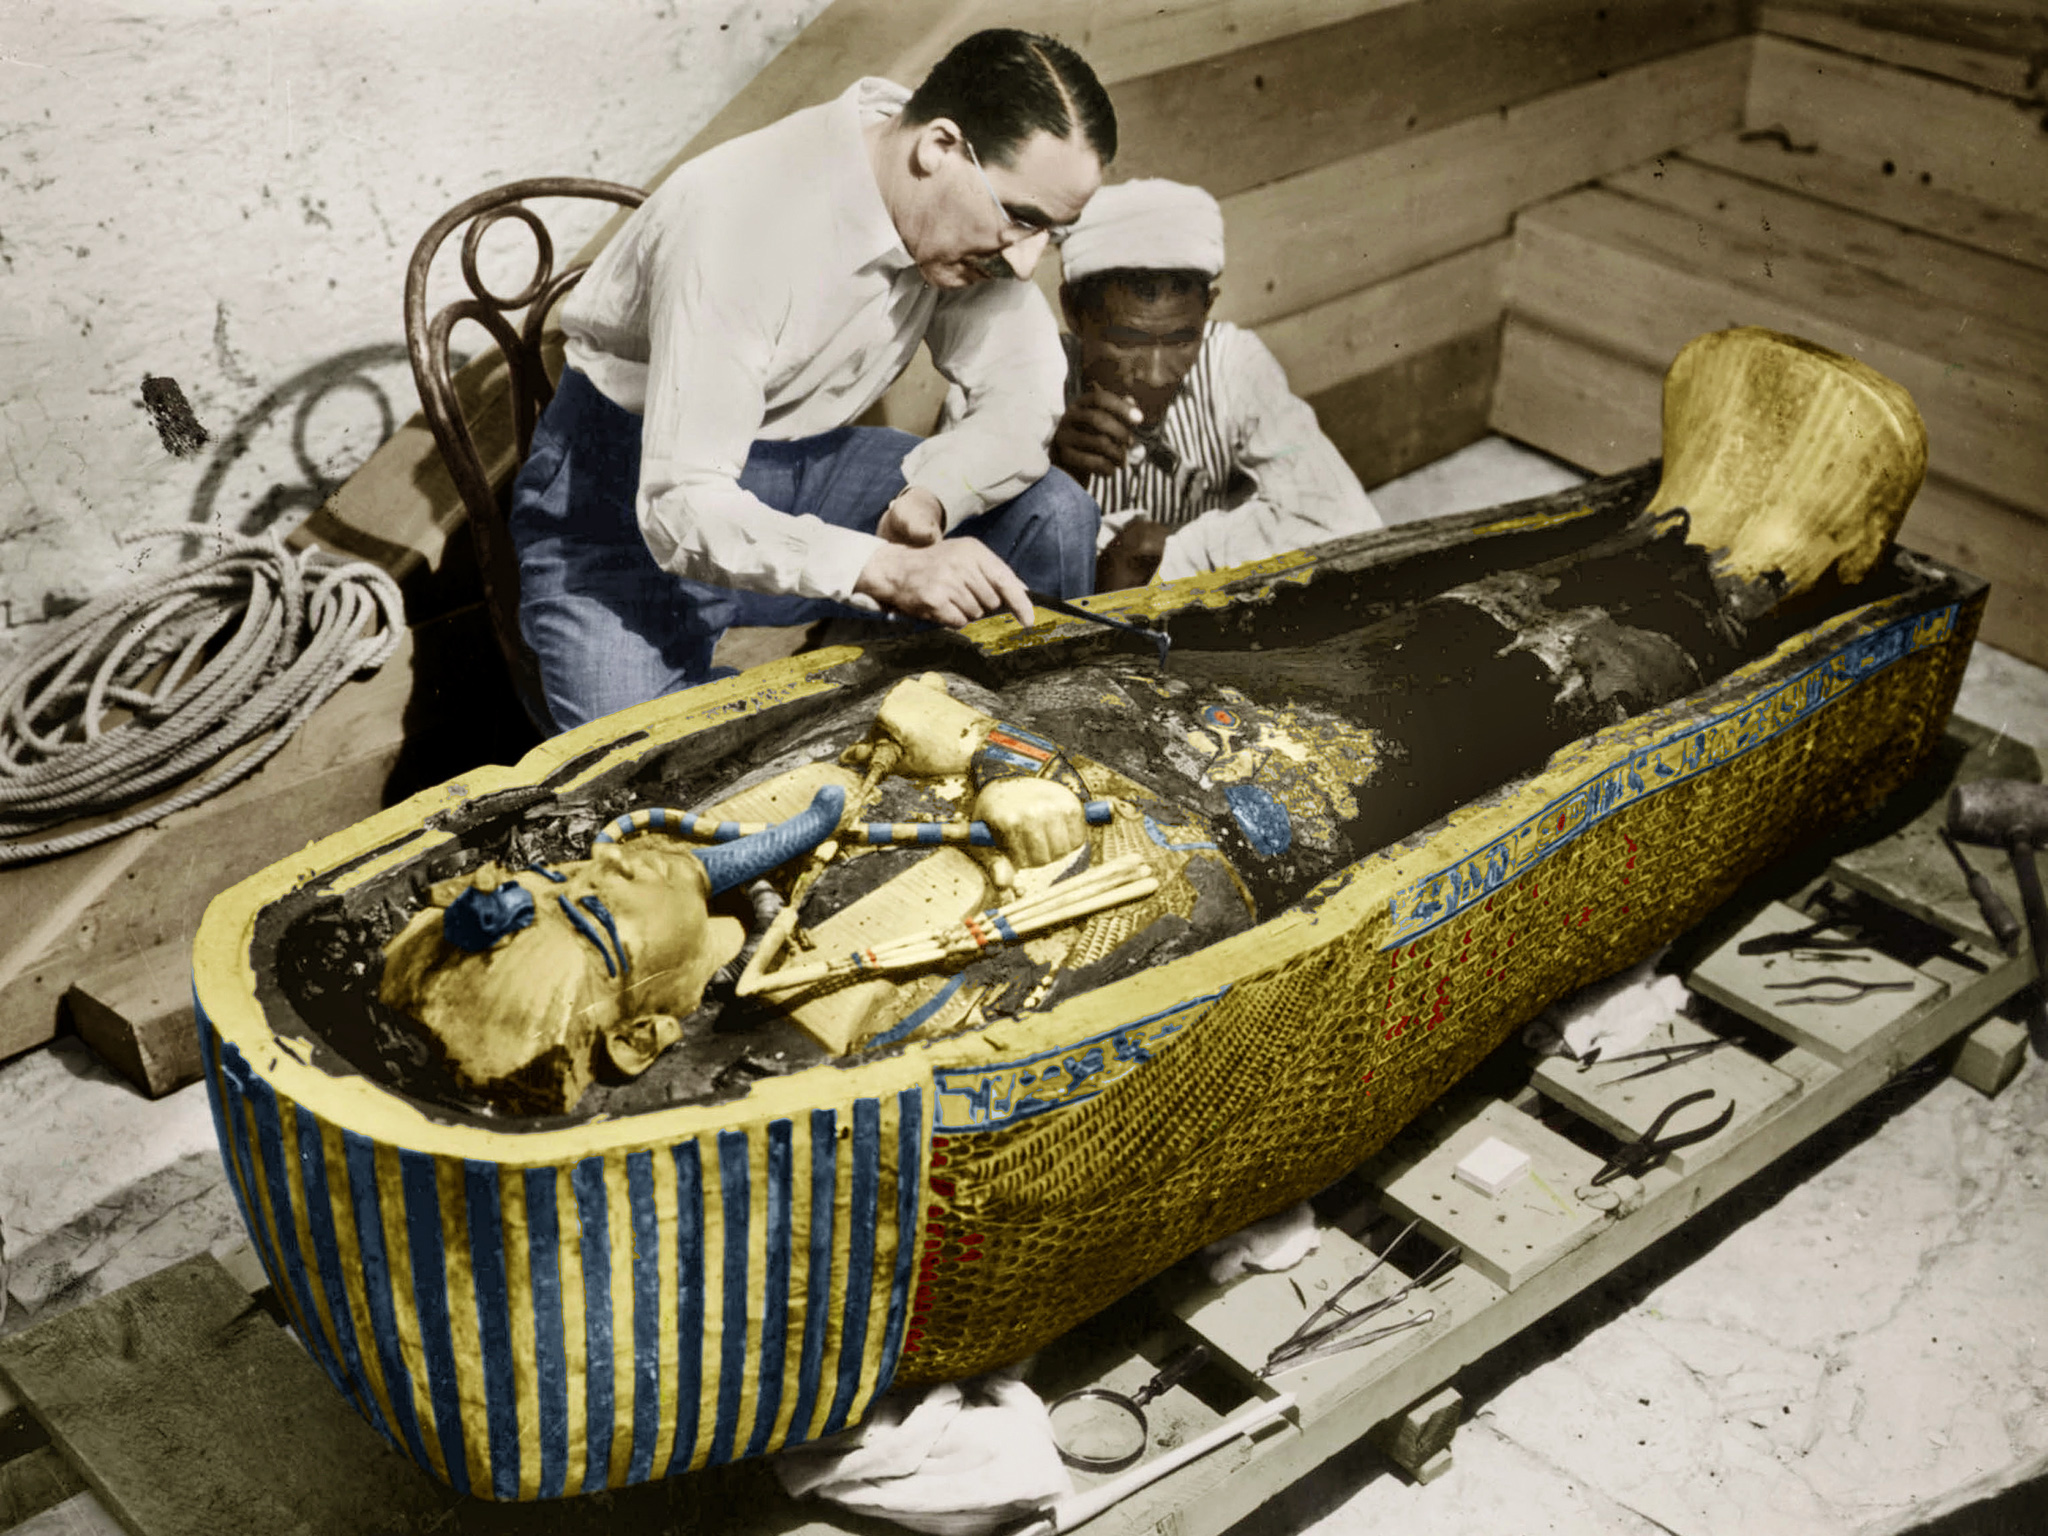 Odkrytí Tutanchamonovy hrobky patří k vůbec největším objevům historie.